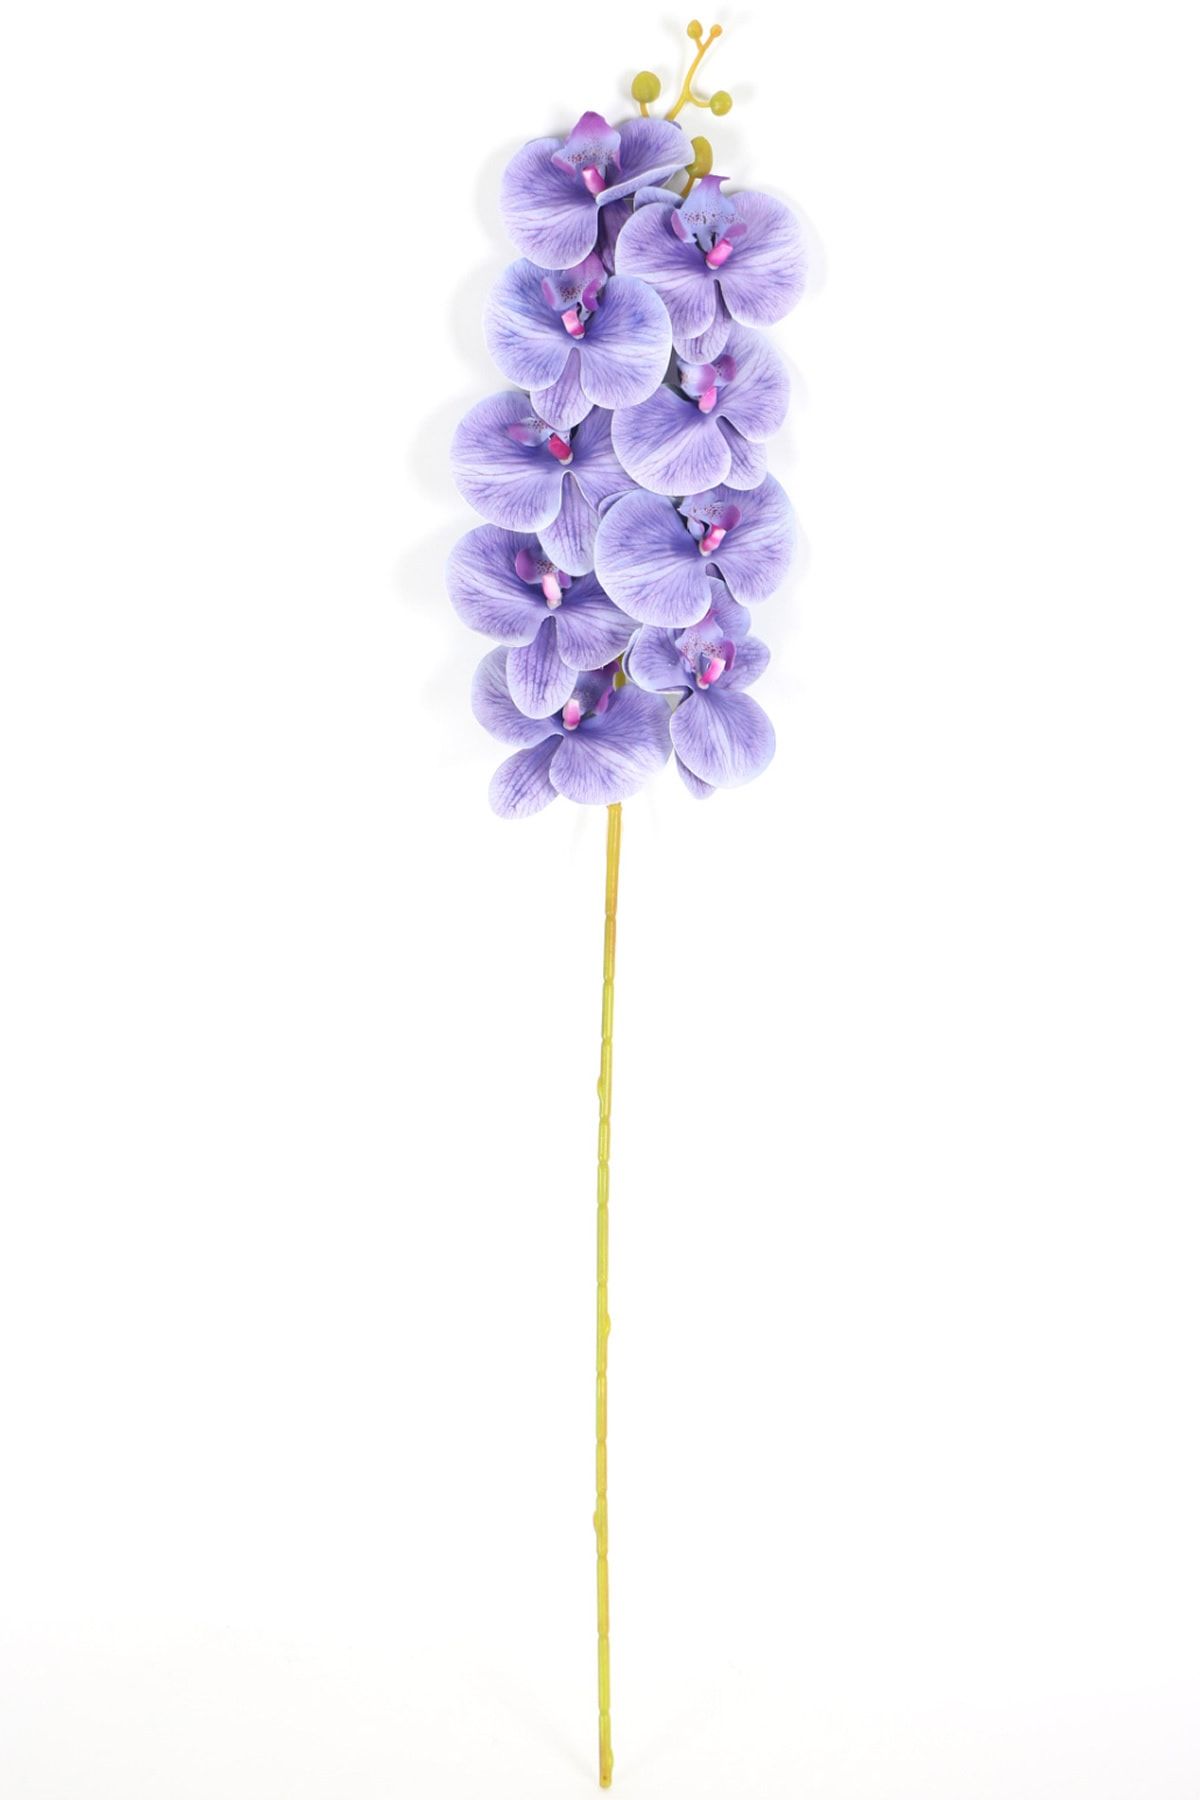 Yapay Çiçek Deposu Yapay Dal Baskılı Orkide Çiçeği 88 Cm Lila